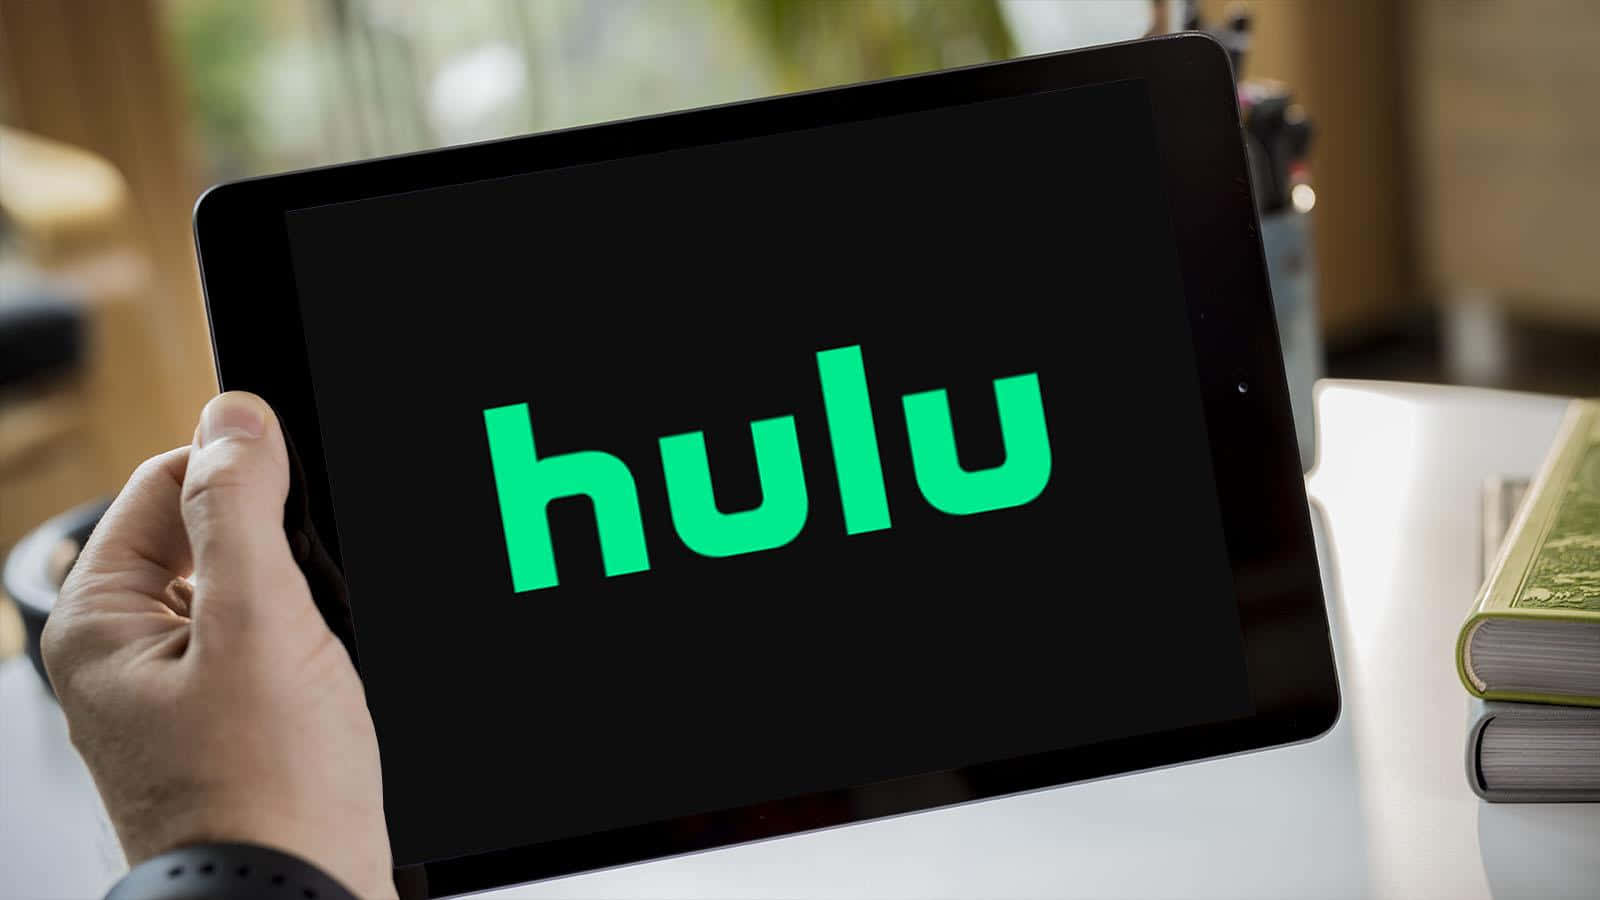 Viendotus Programas De Televisión Favoritos Con Hulu